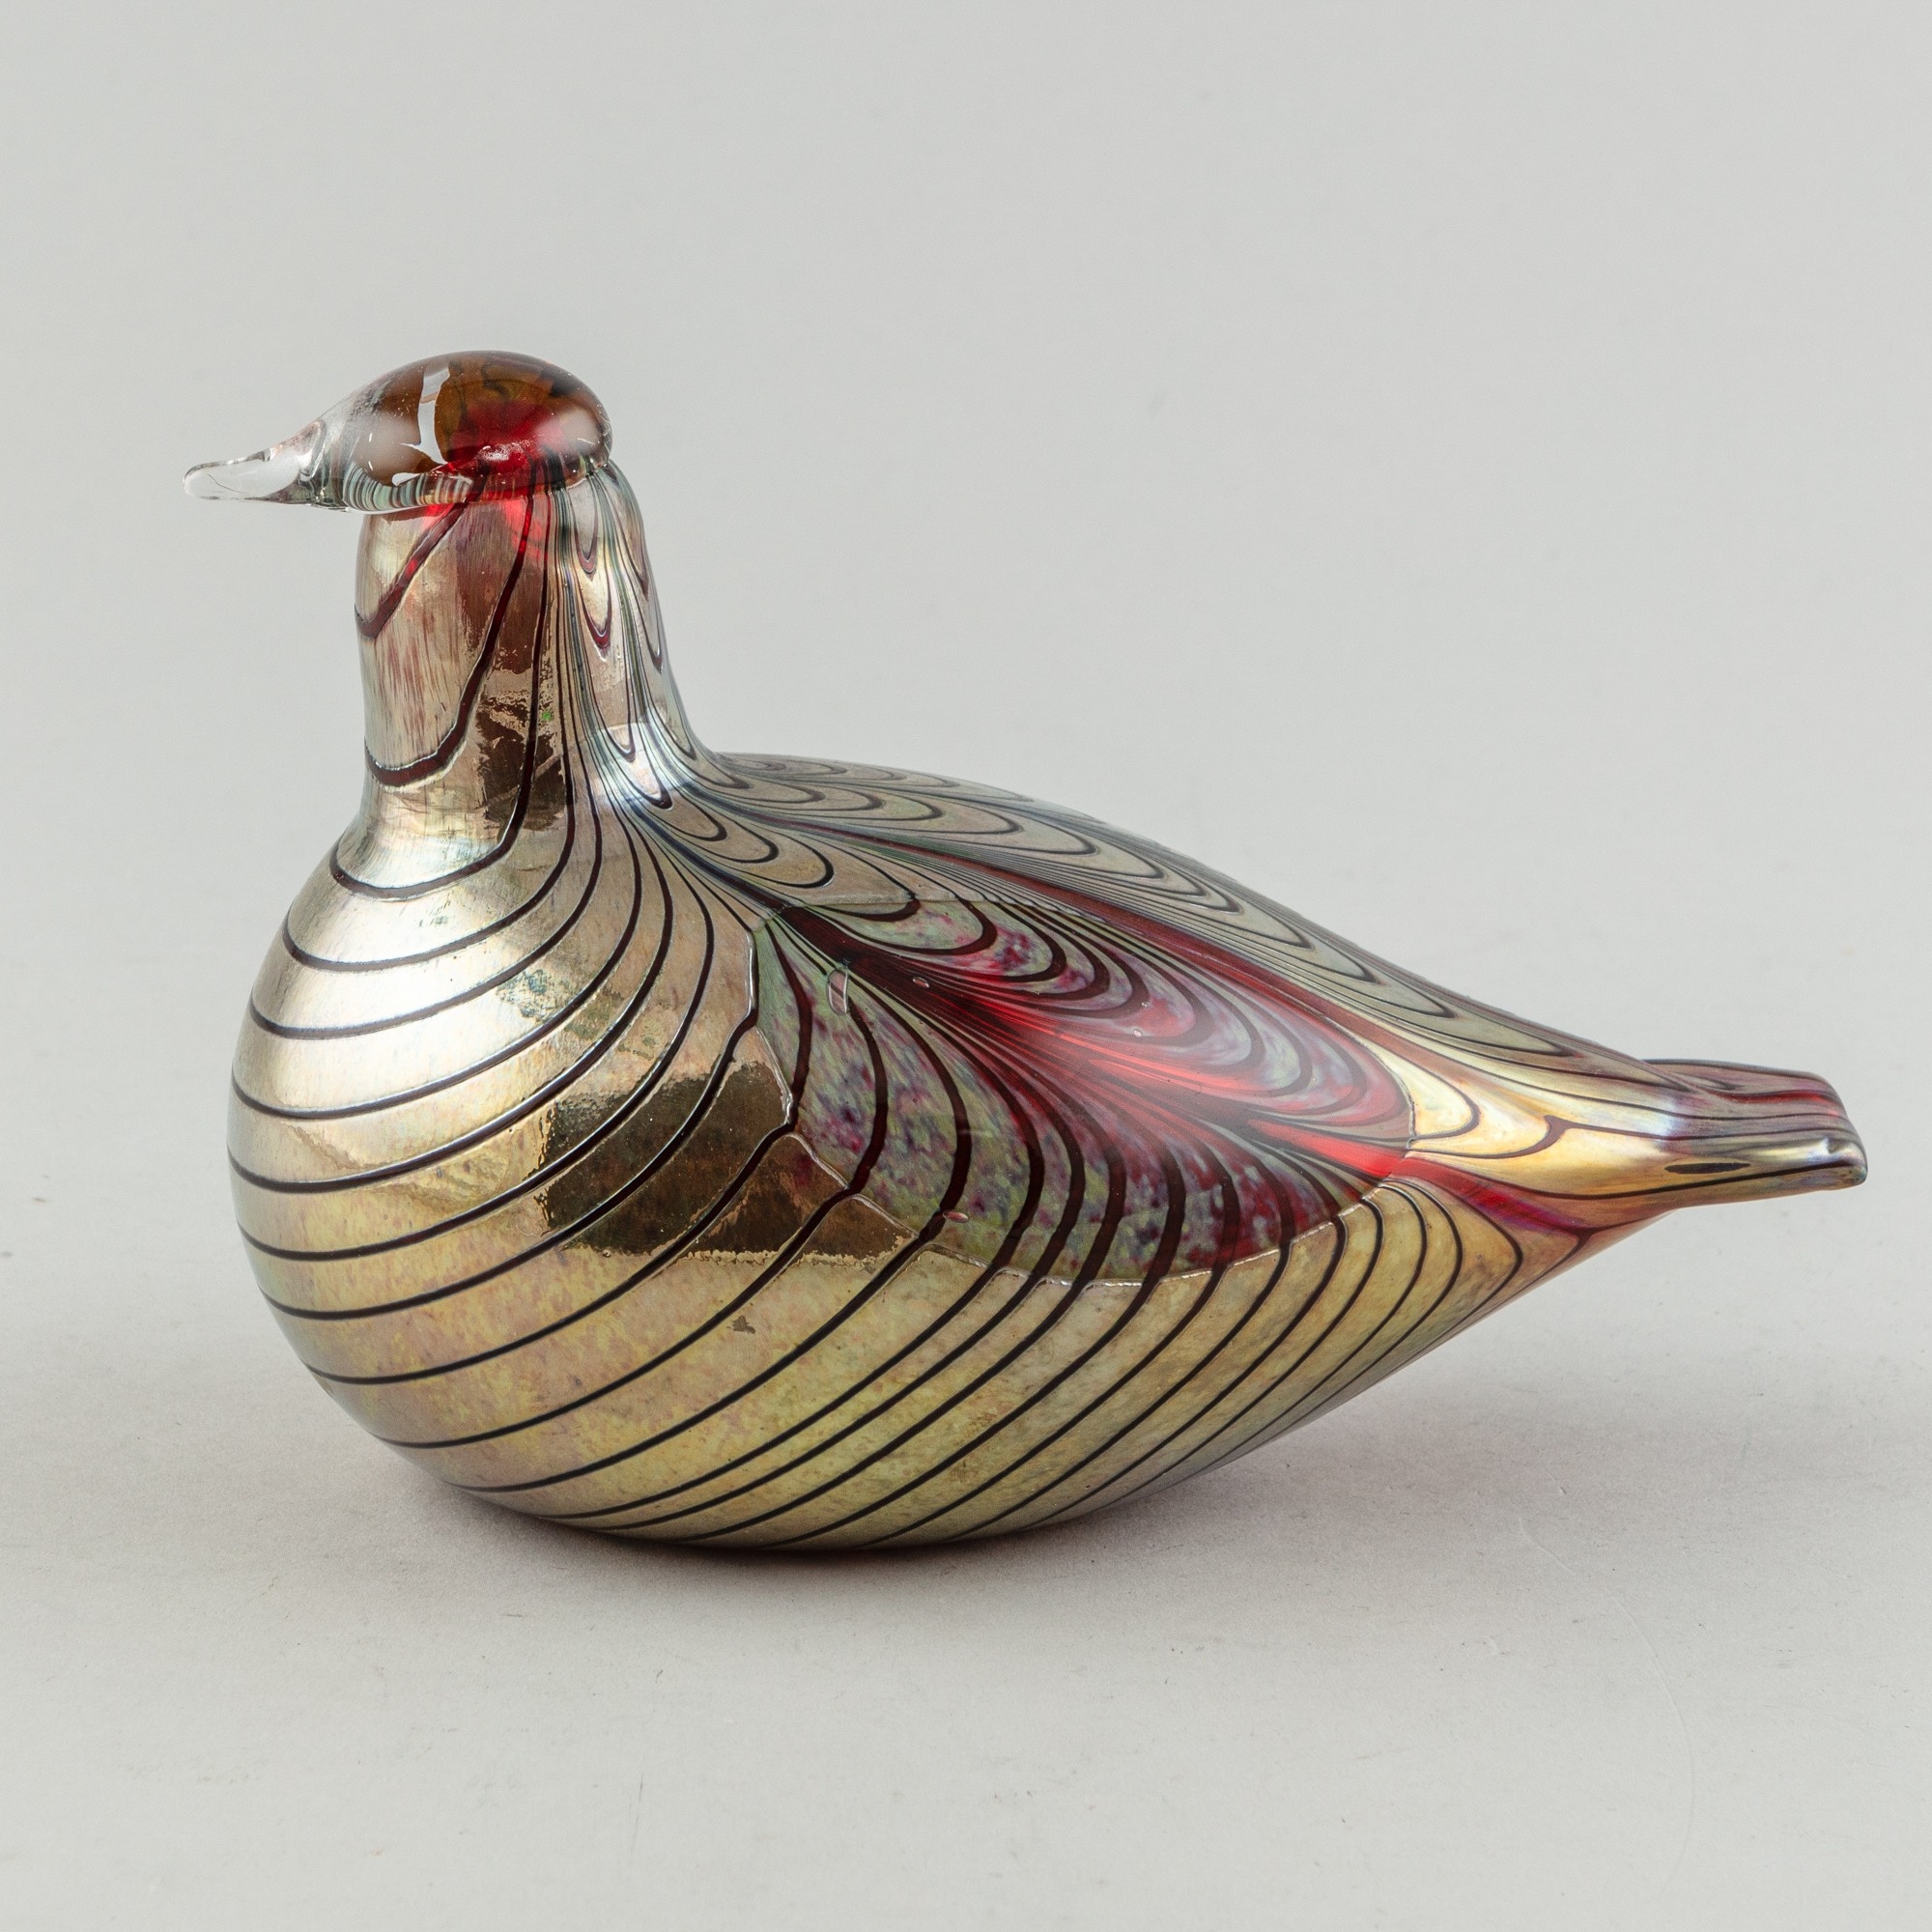 Pheasant by Oiva Toikka